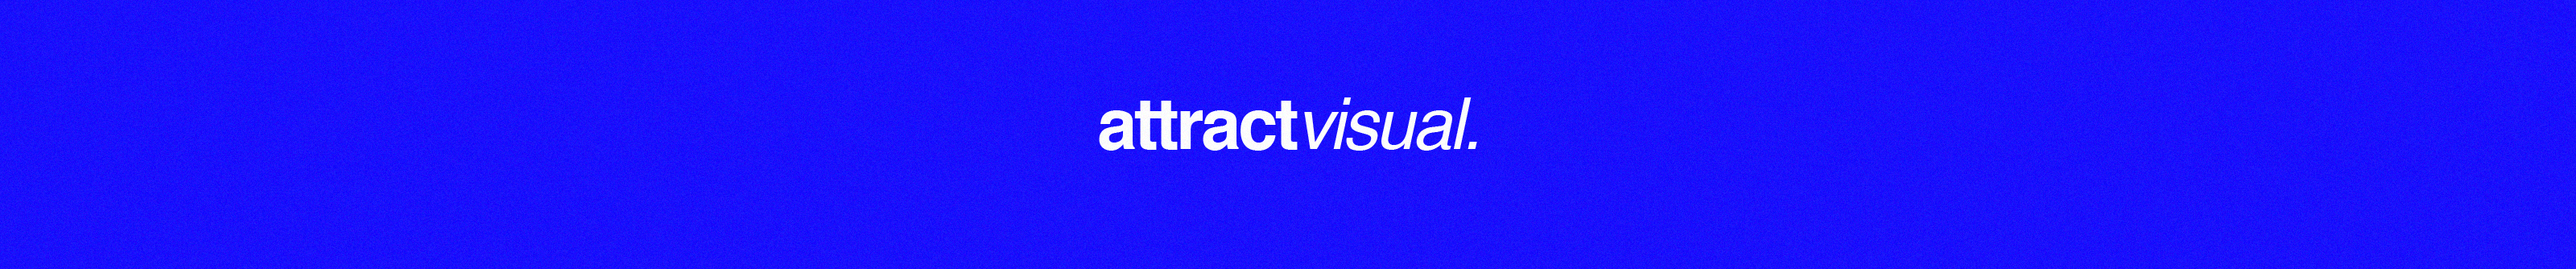 Attract visual's profile banner